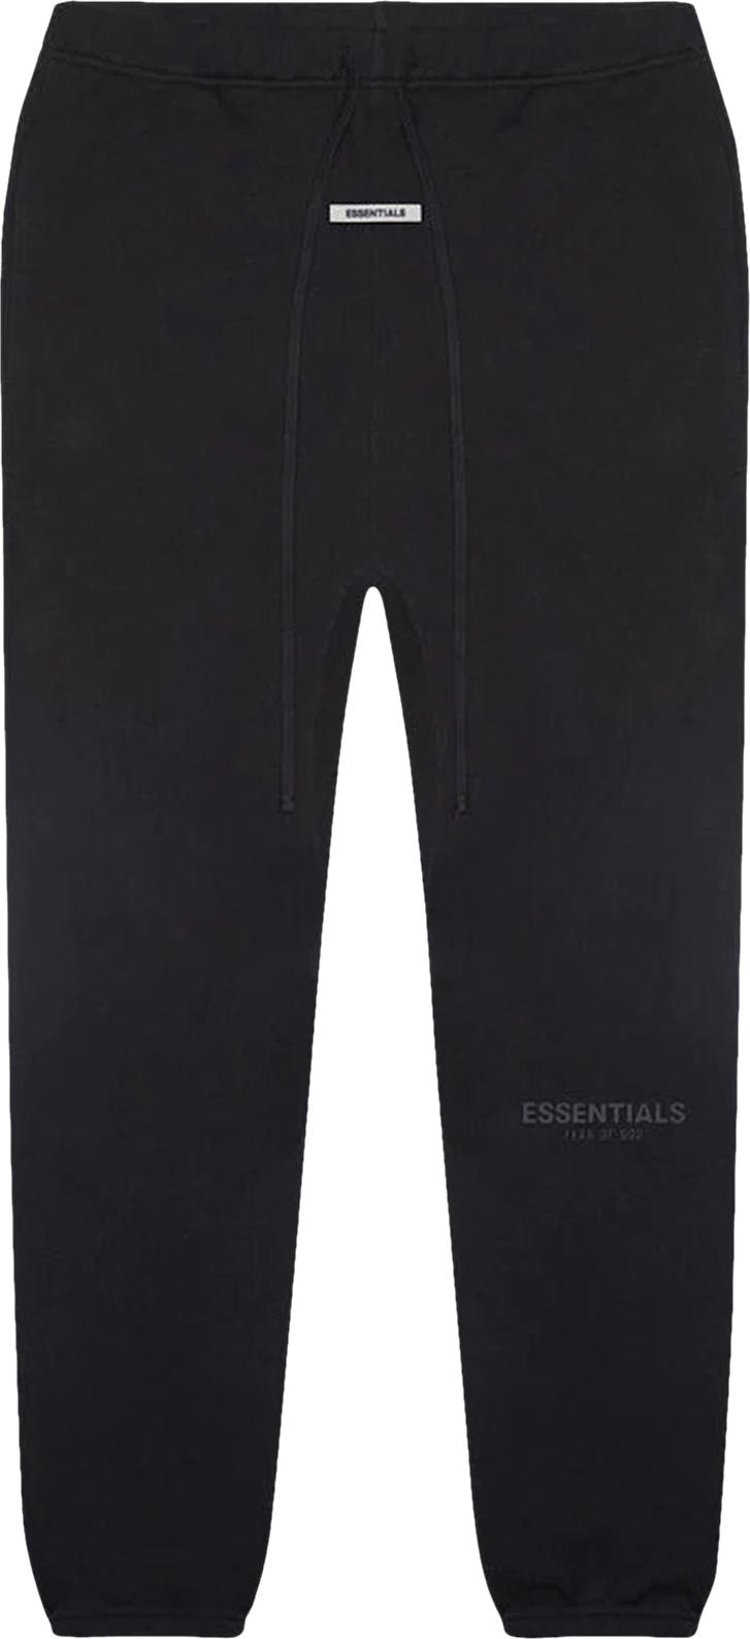 Essentials Sweatpants (Black)  Fear of God – Urban Street Wear